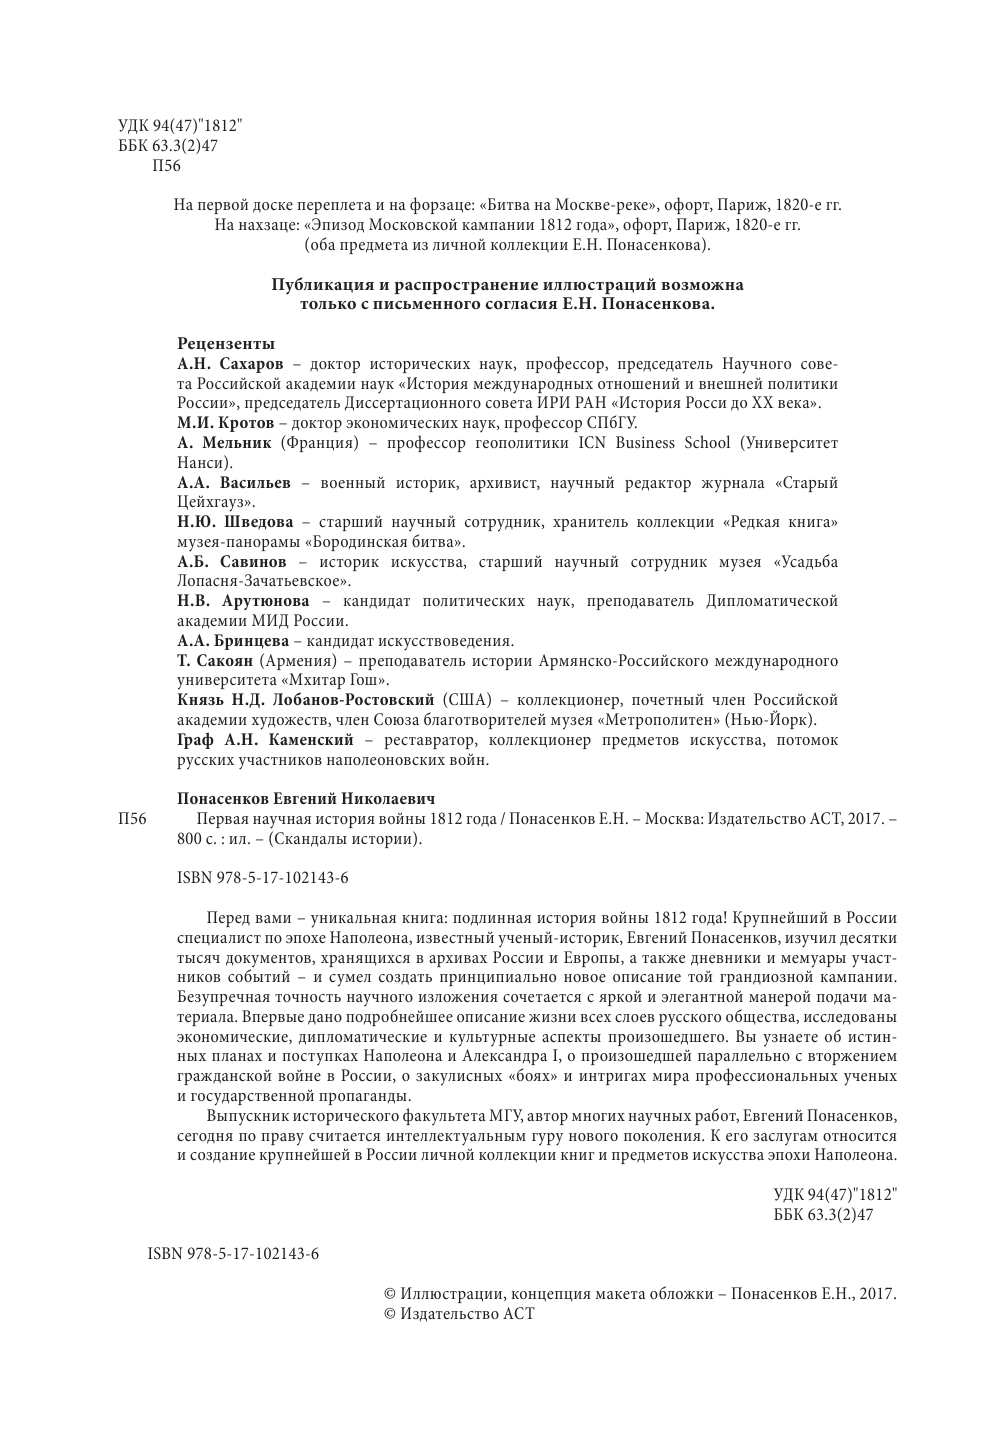 Понасенков Евгений Николаевич Первая научная история войны 1812 года - страница 3